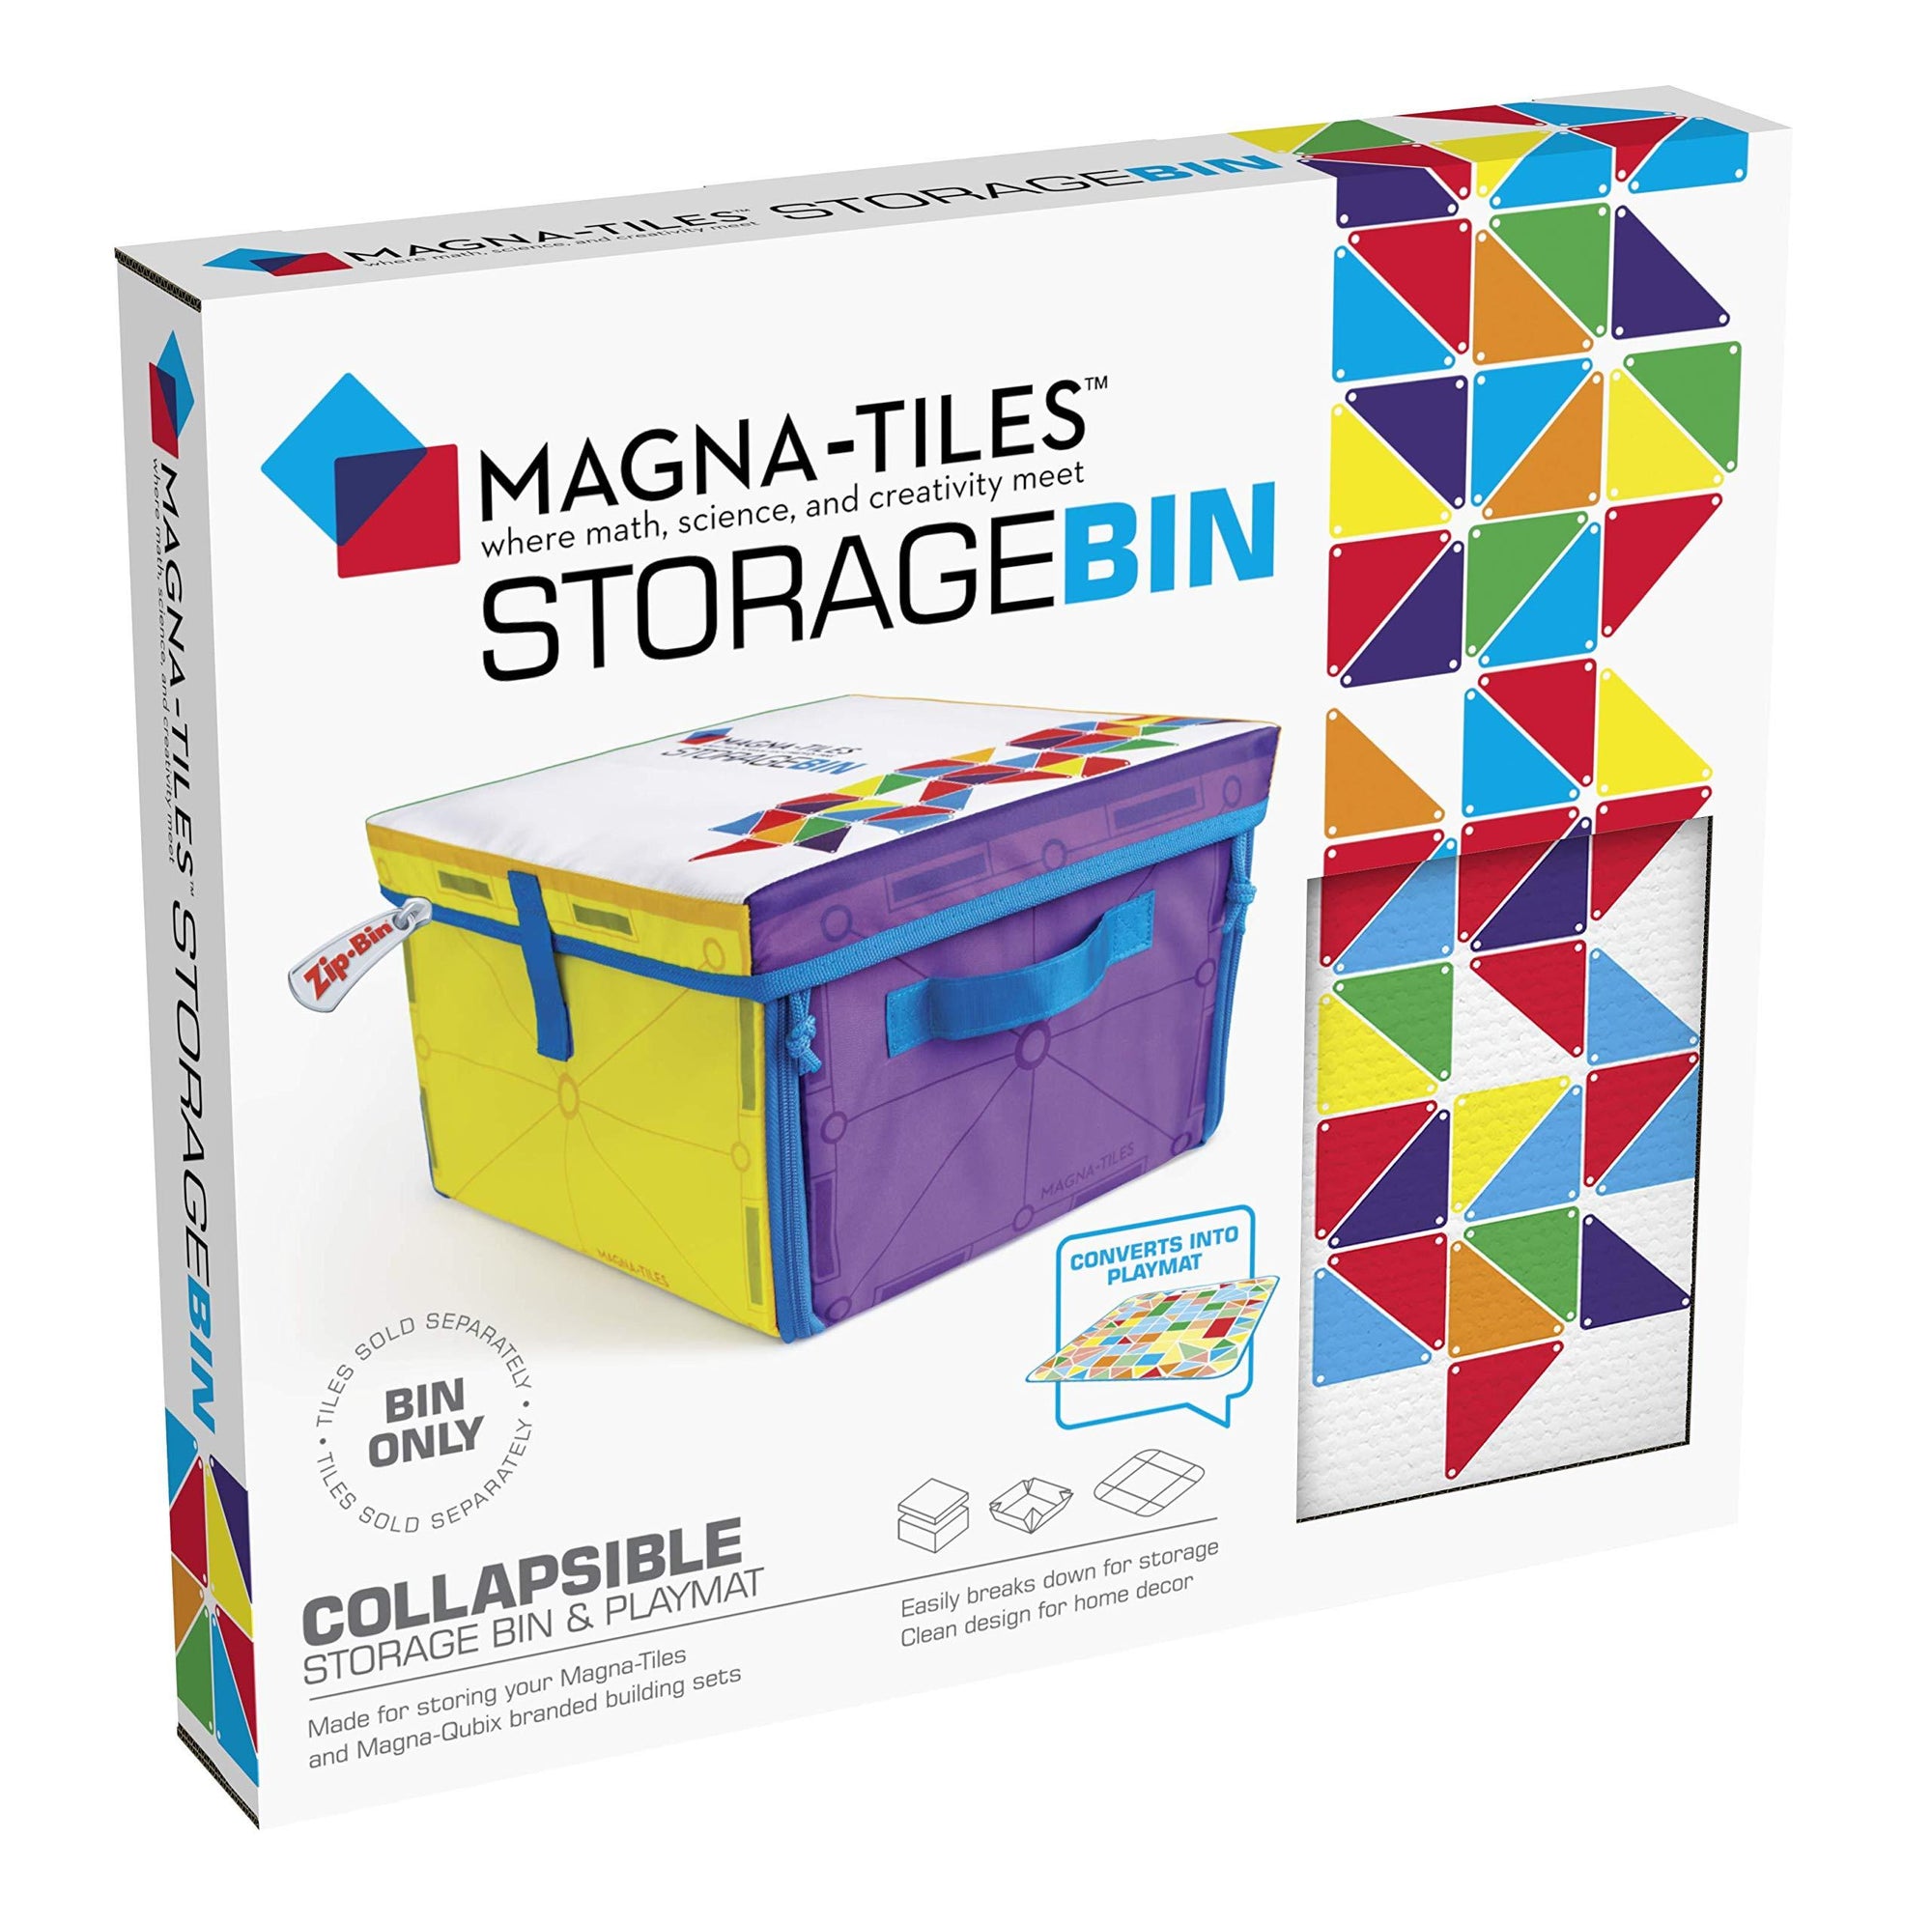 Magna-Tiles - Cubo de almacenamiento y tapete de juego interactivo